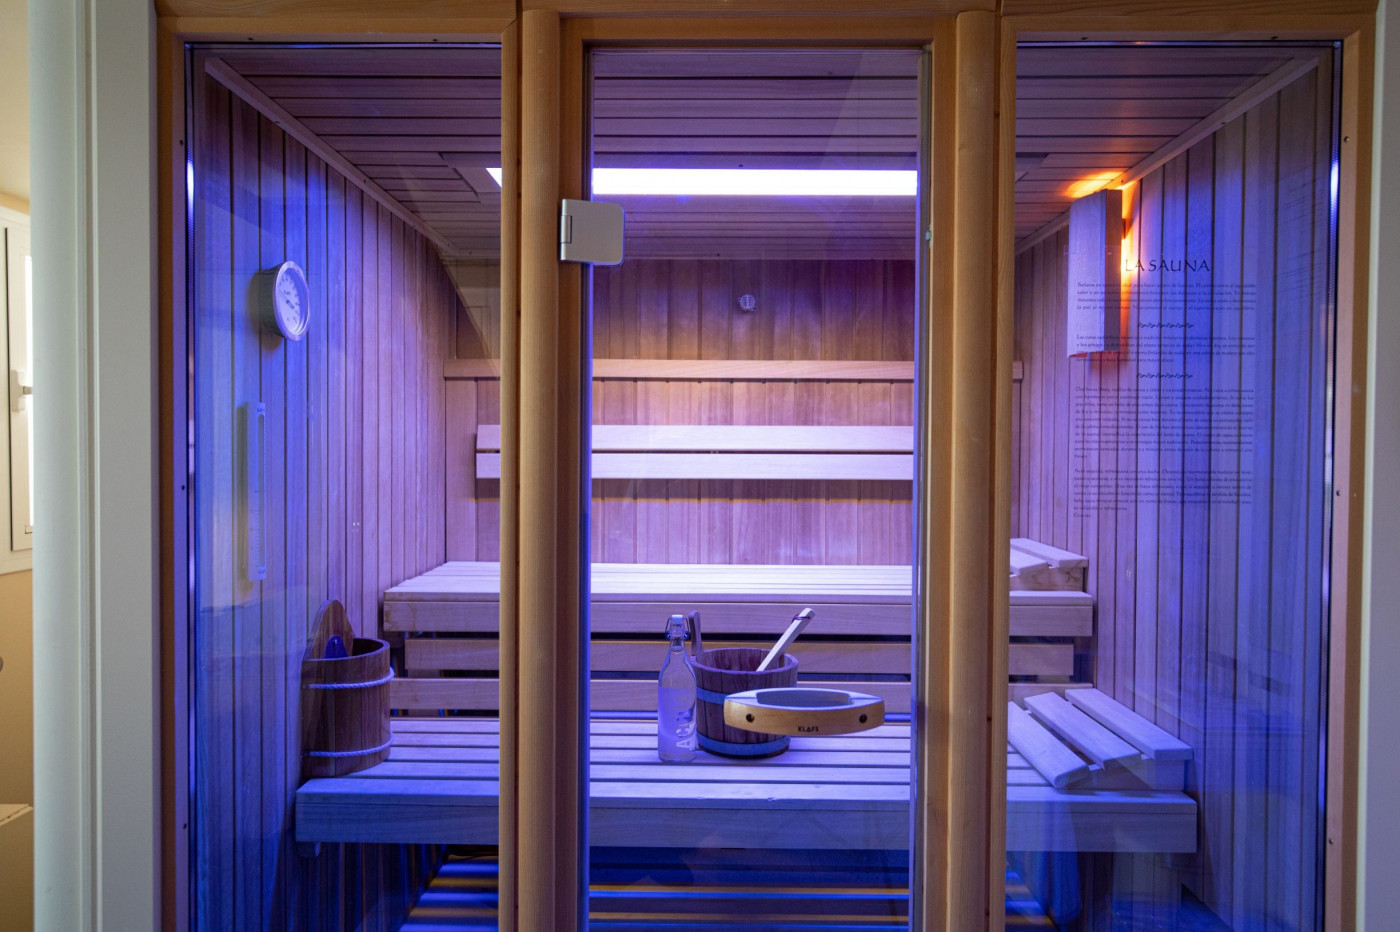  Habitación doble superior Nº10 con sauna y bañera de hidromasaje 5